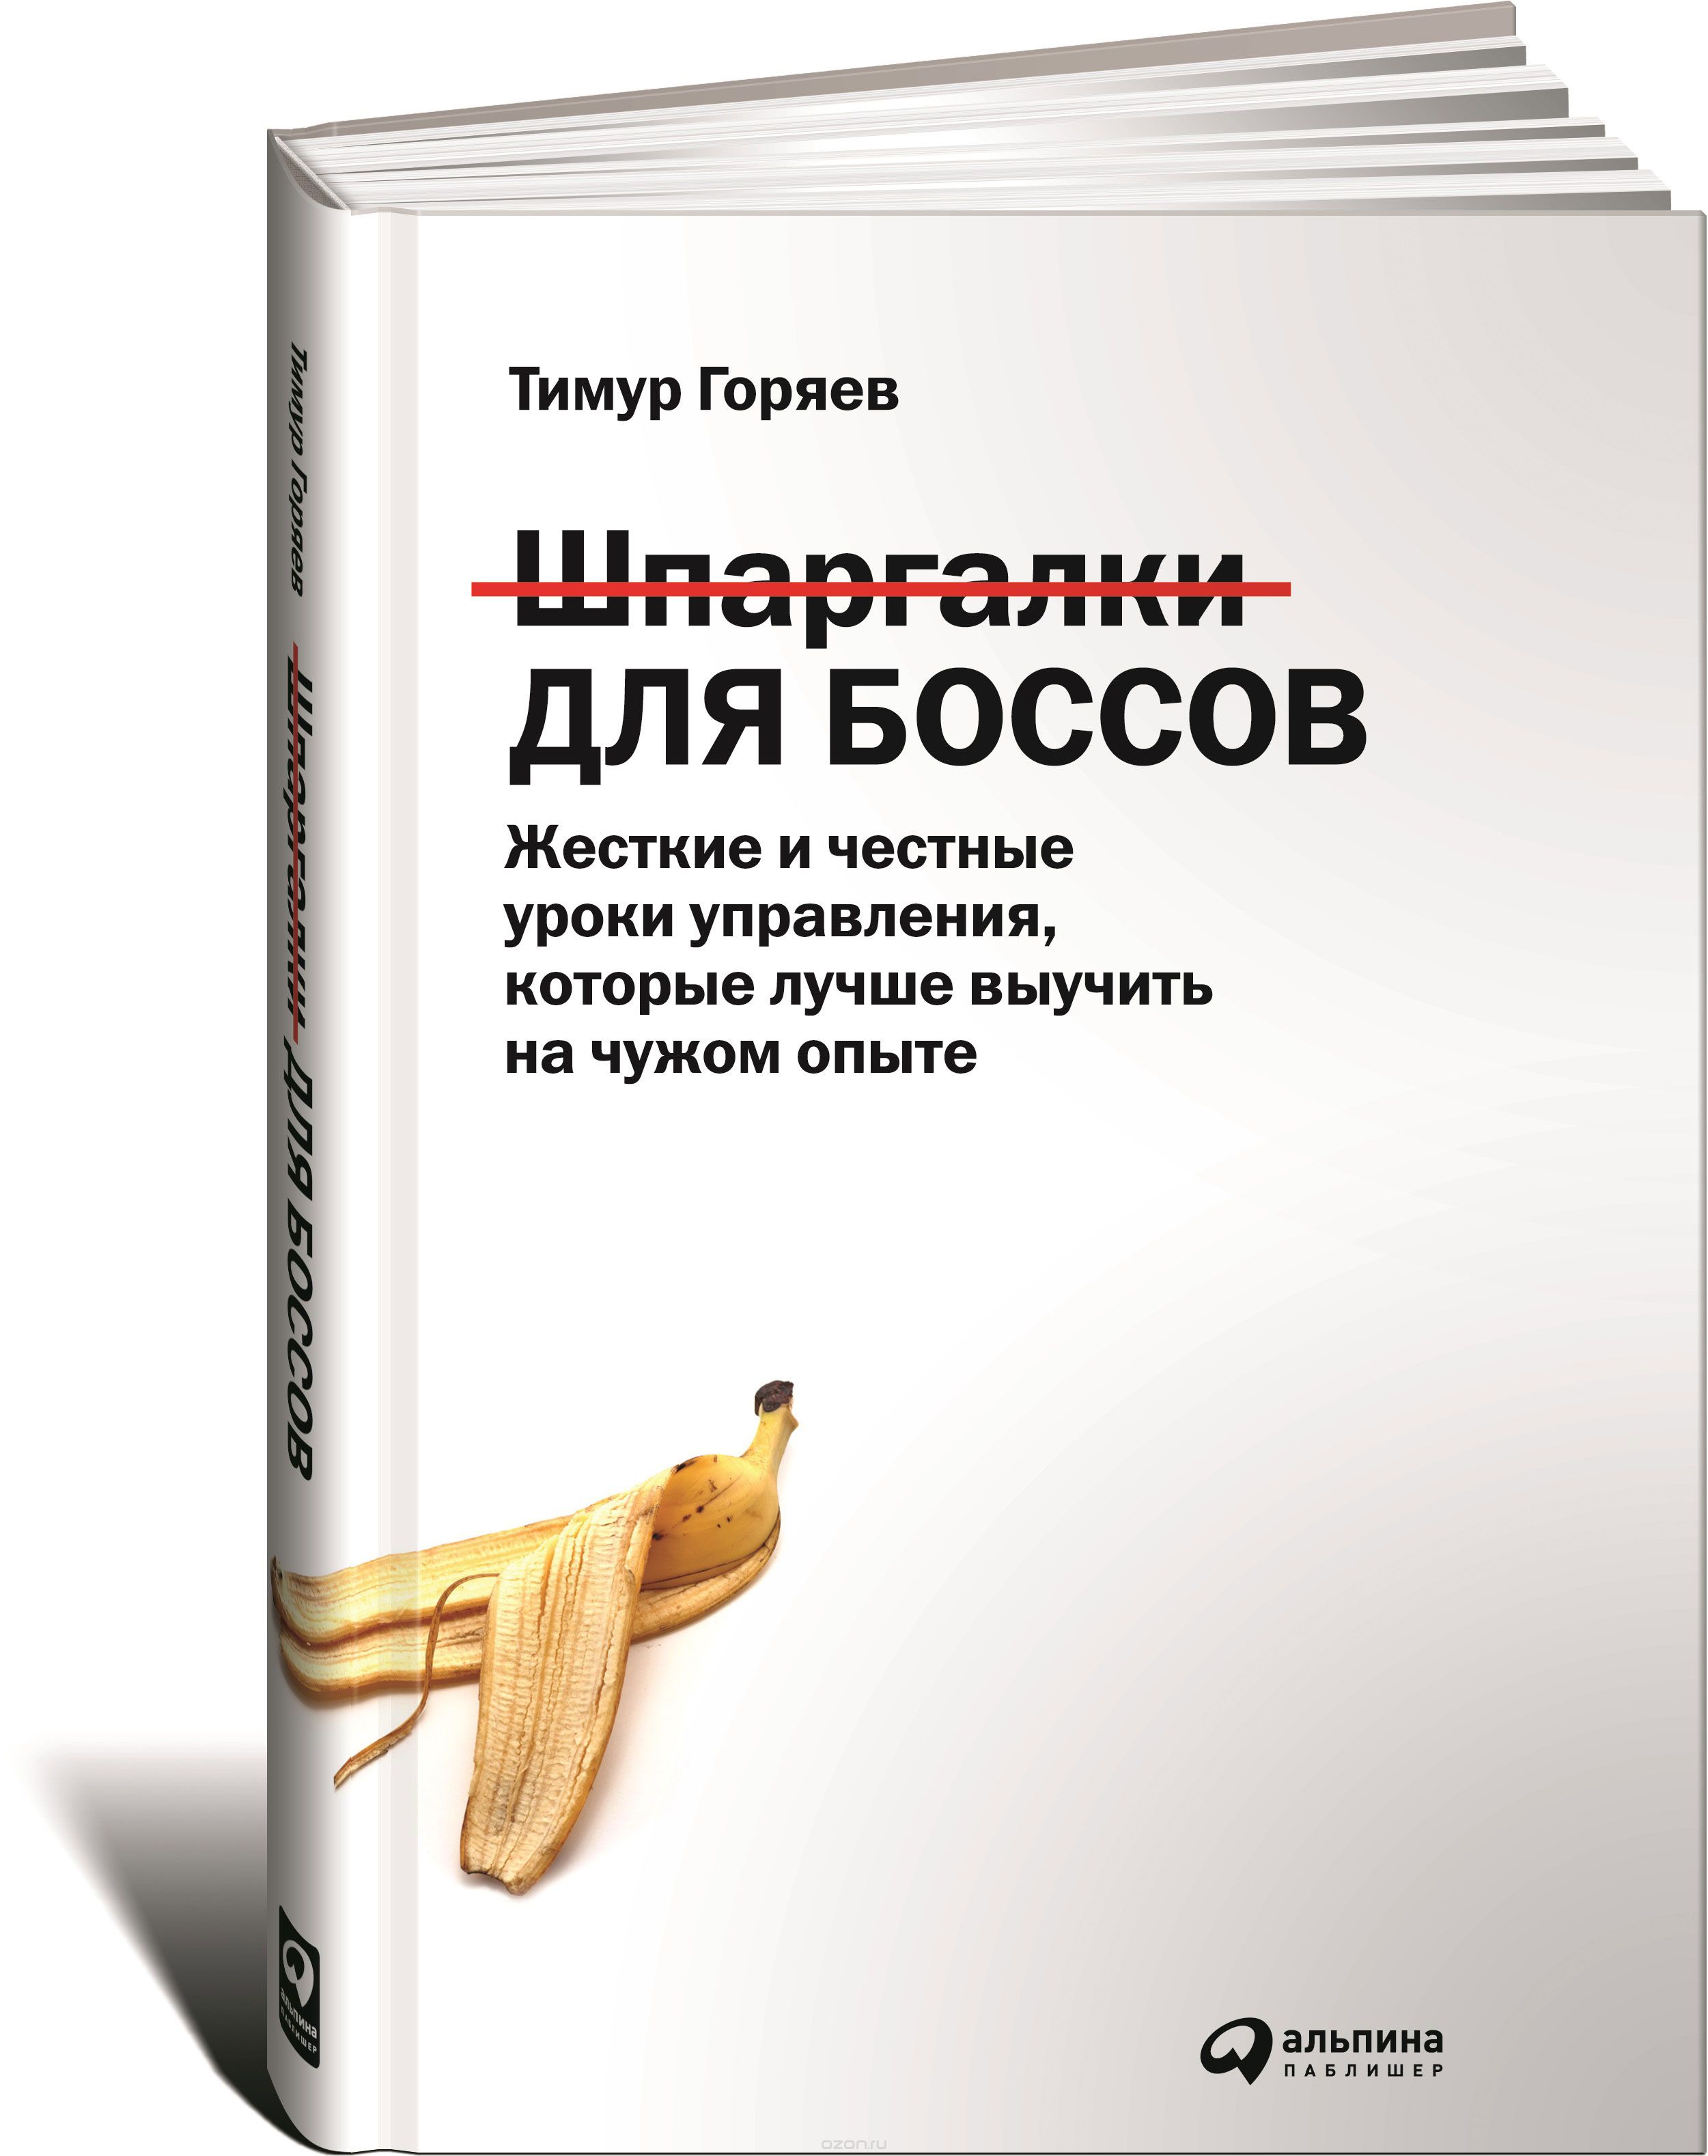 Скачать книгу "Шпаргалки для боссов. Жесткие и честные уроки управления, которые лучше выучить на чужом опыте, Тимур Горяев"